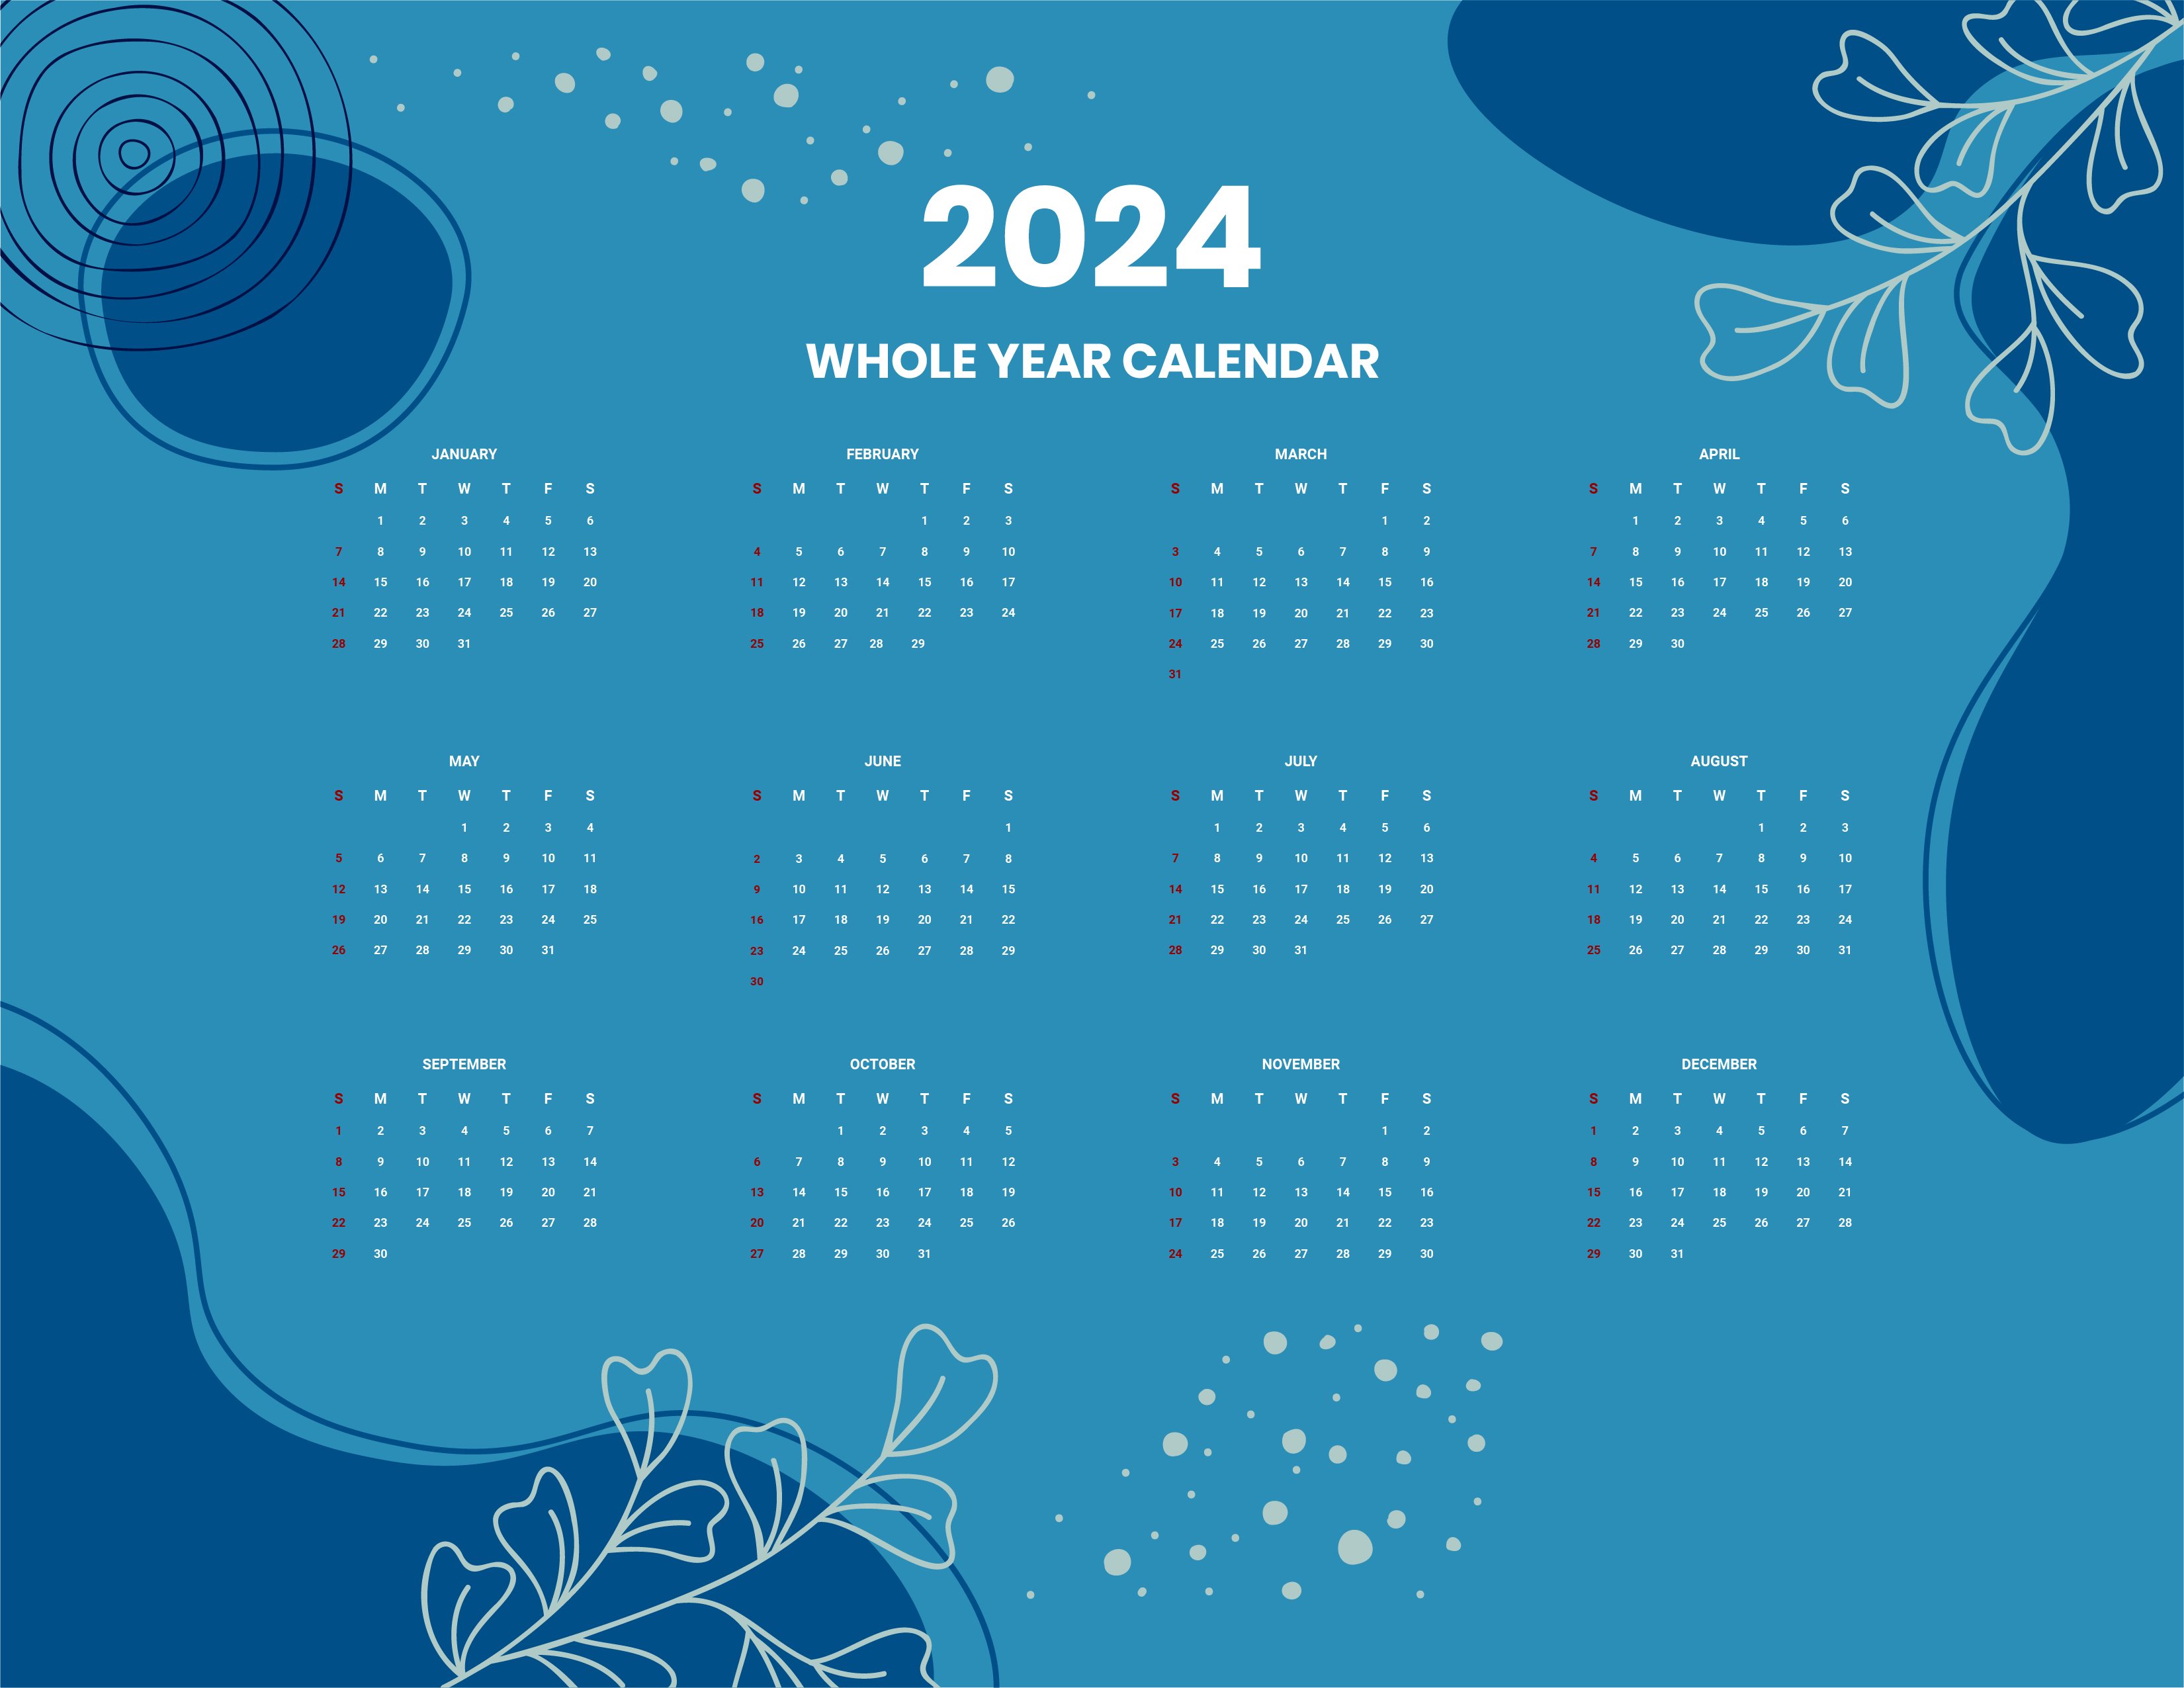 2024 Calendar Template Word